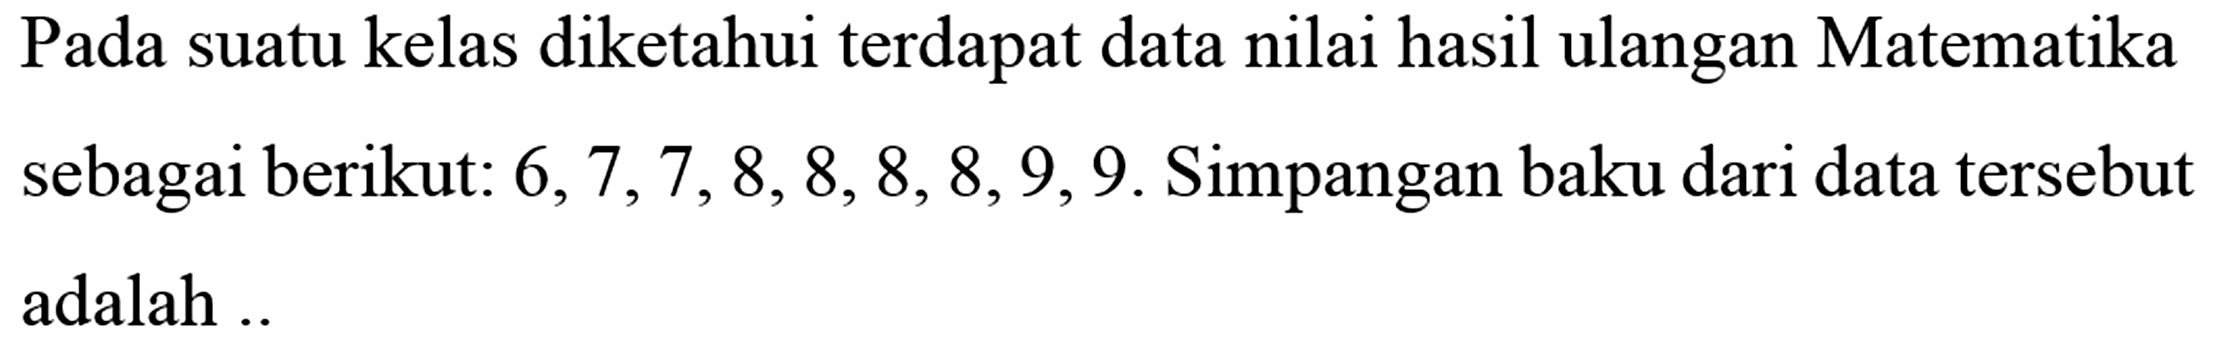 Pada suatu kelas diketahui terdapat data nilai hasil ulangan Matematika sebagai berikut: 6,7,7,8,8,8,8,9,9. Simpangan baku dari data tersebut adalah ....